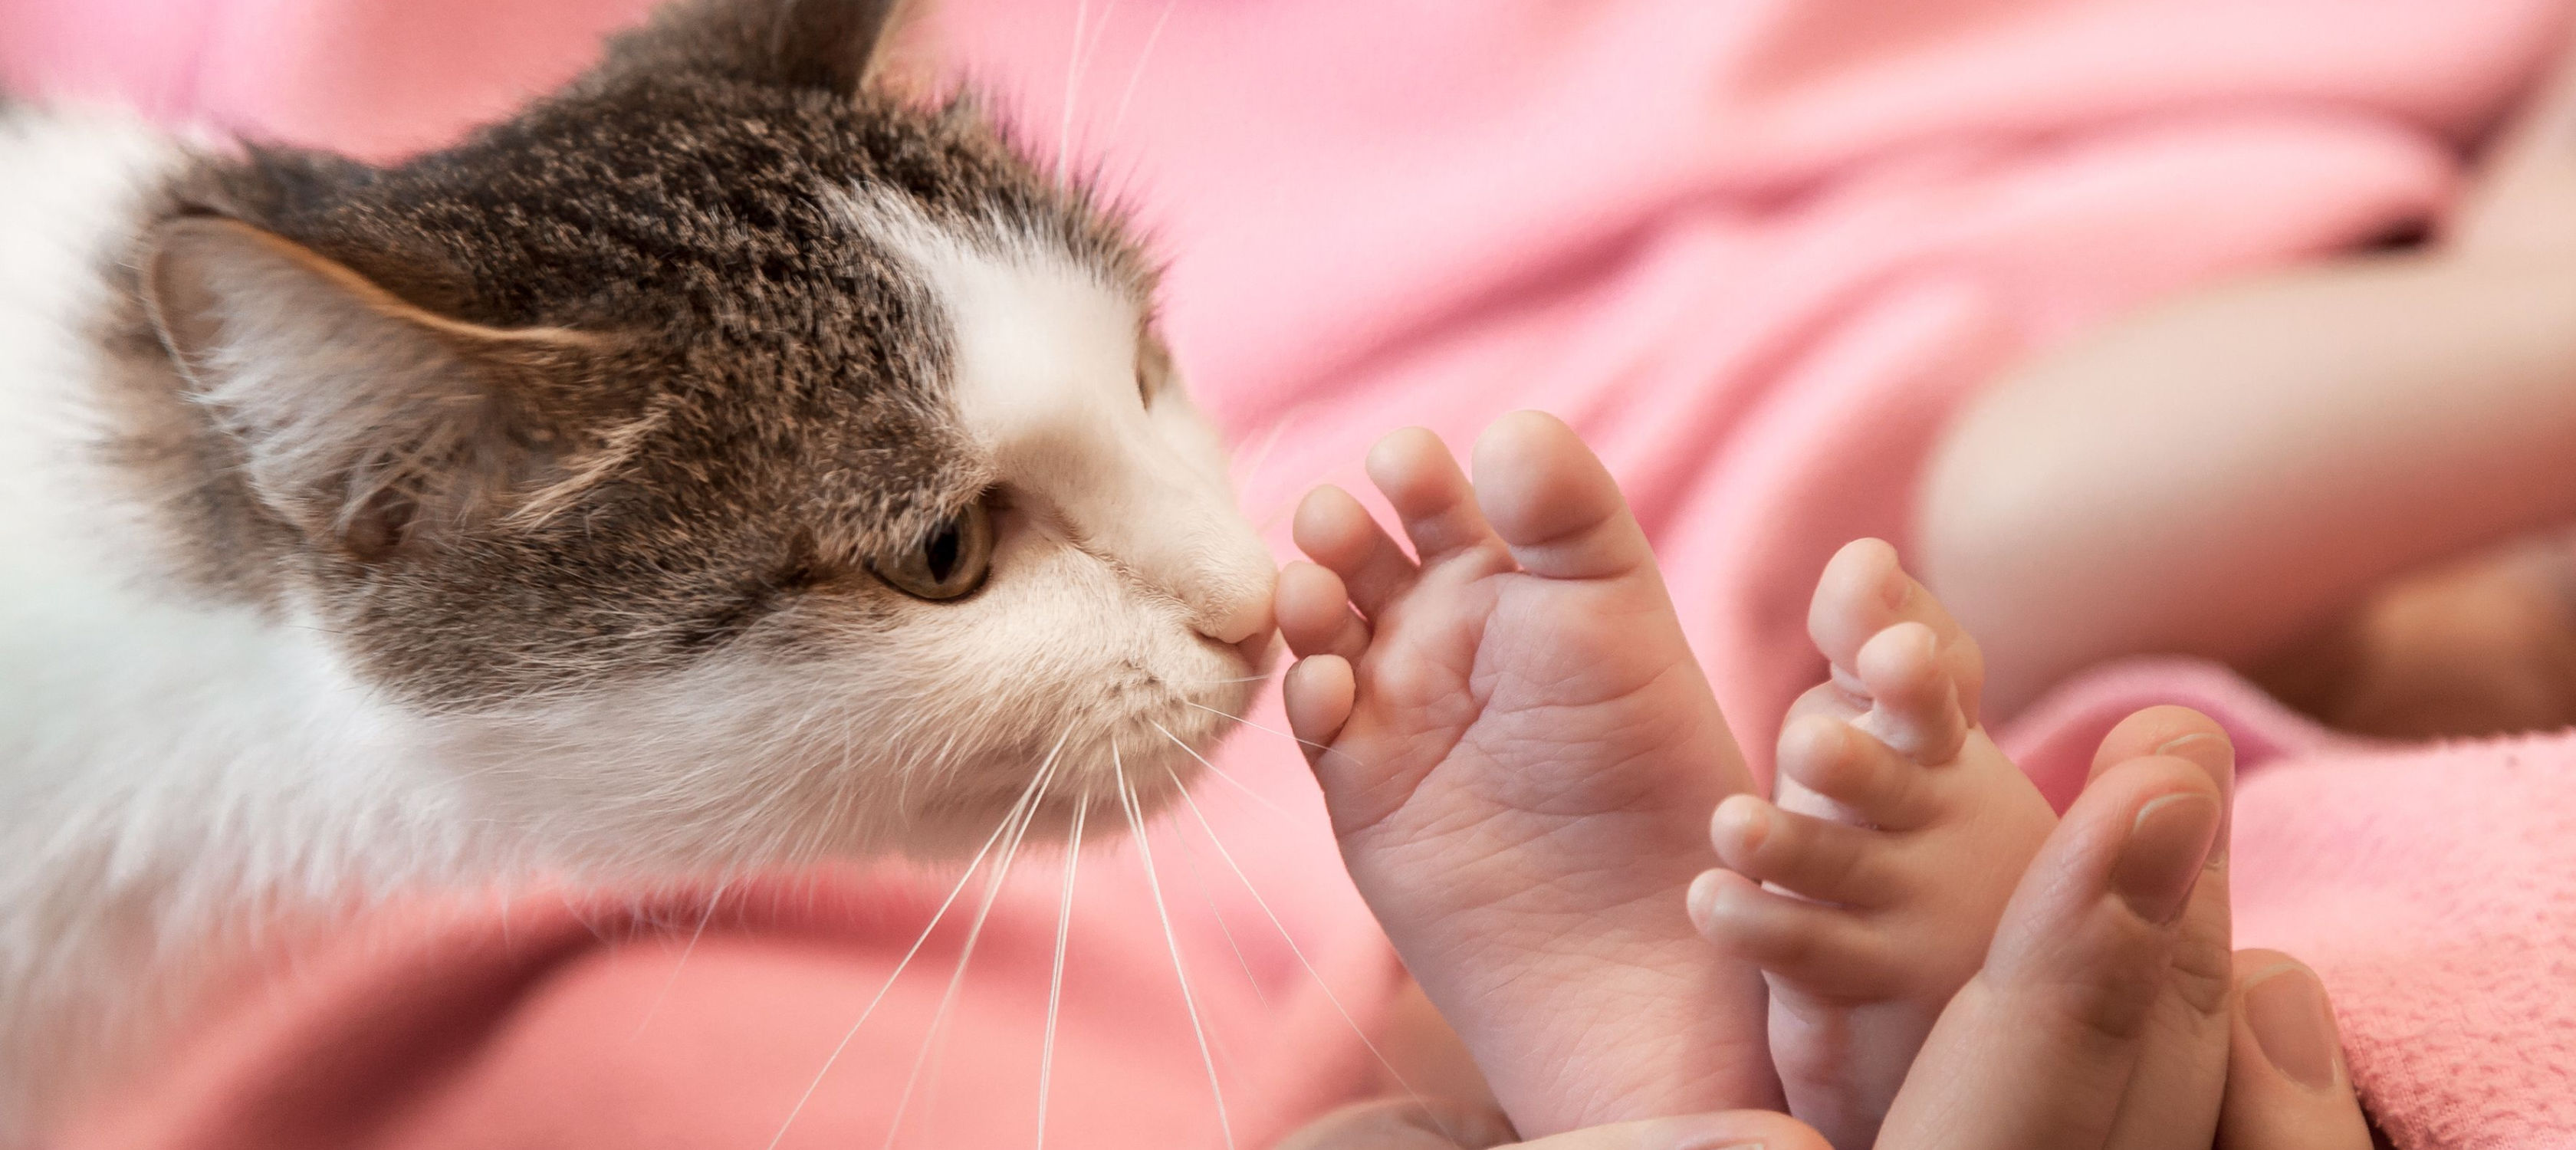 gato cheirando o pé de um bebé